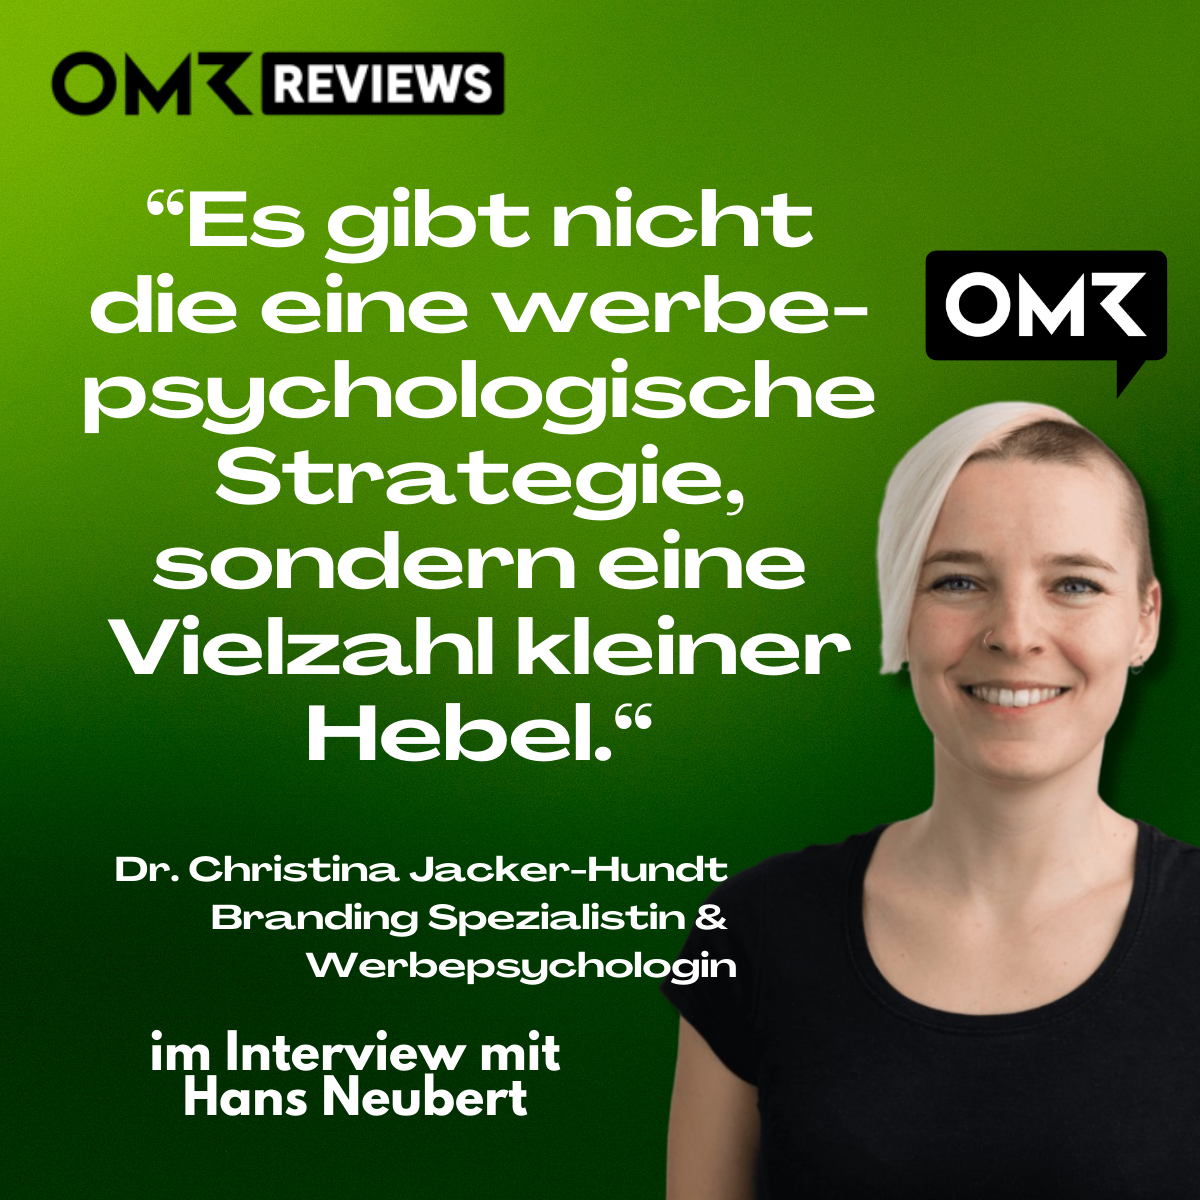 Dr. Christina Jacker-Hundt im Interview mit Hans Neubert für OMR Reviews